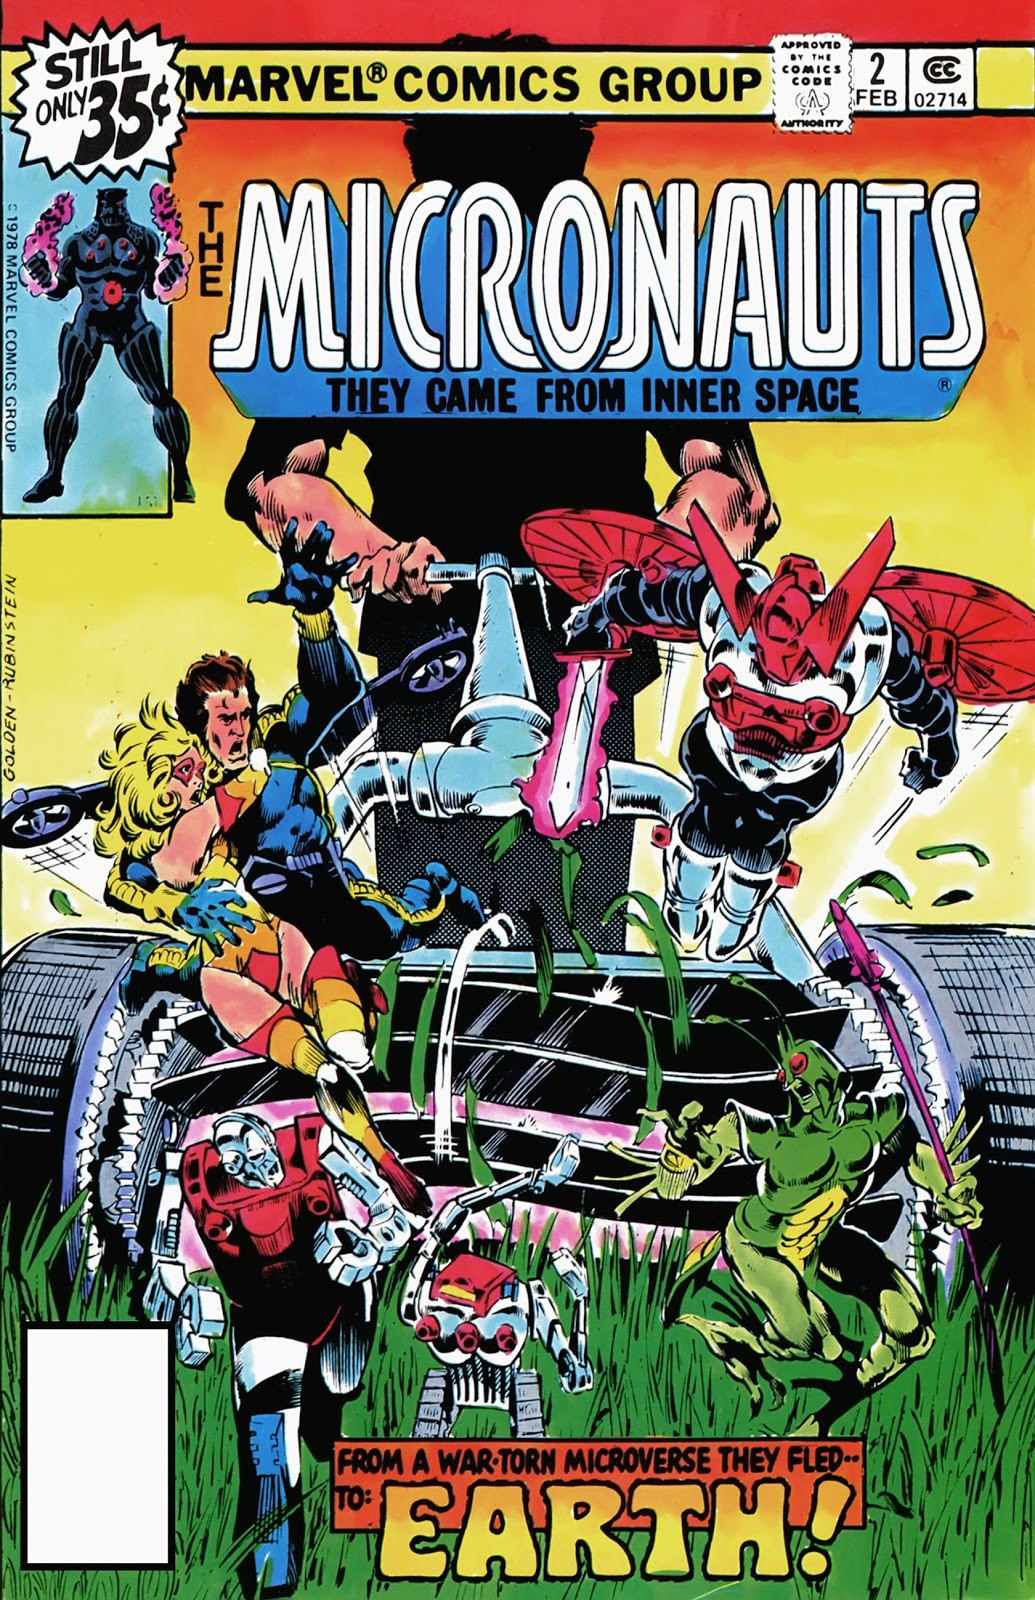 MICRONAUTS #55 VOL 1 MARVEL COMICS NOVEMBER 1983